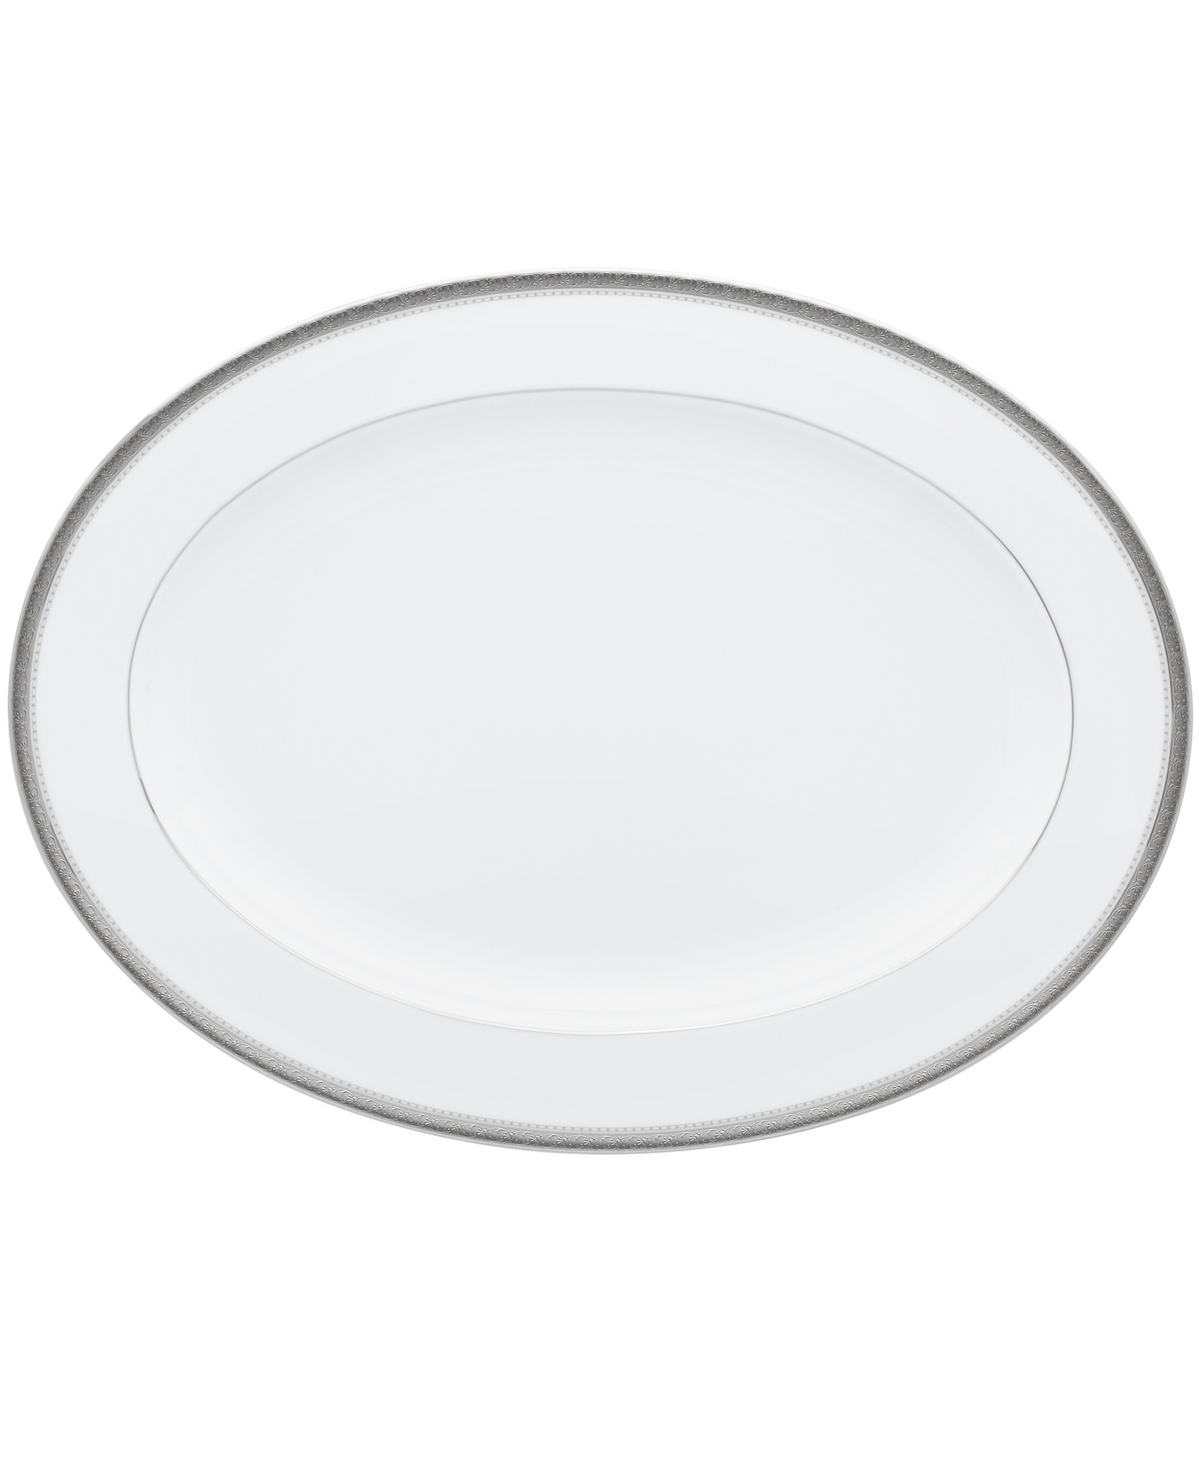 Noritake Charlotta Platinum Oval Platter, 16" In White